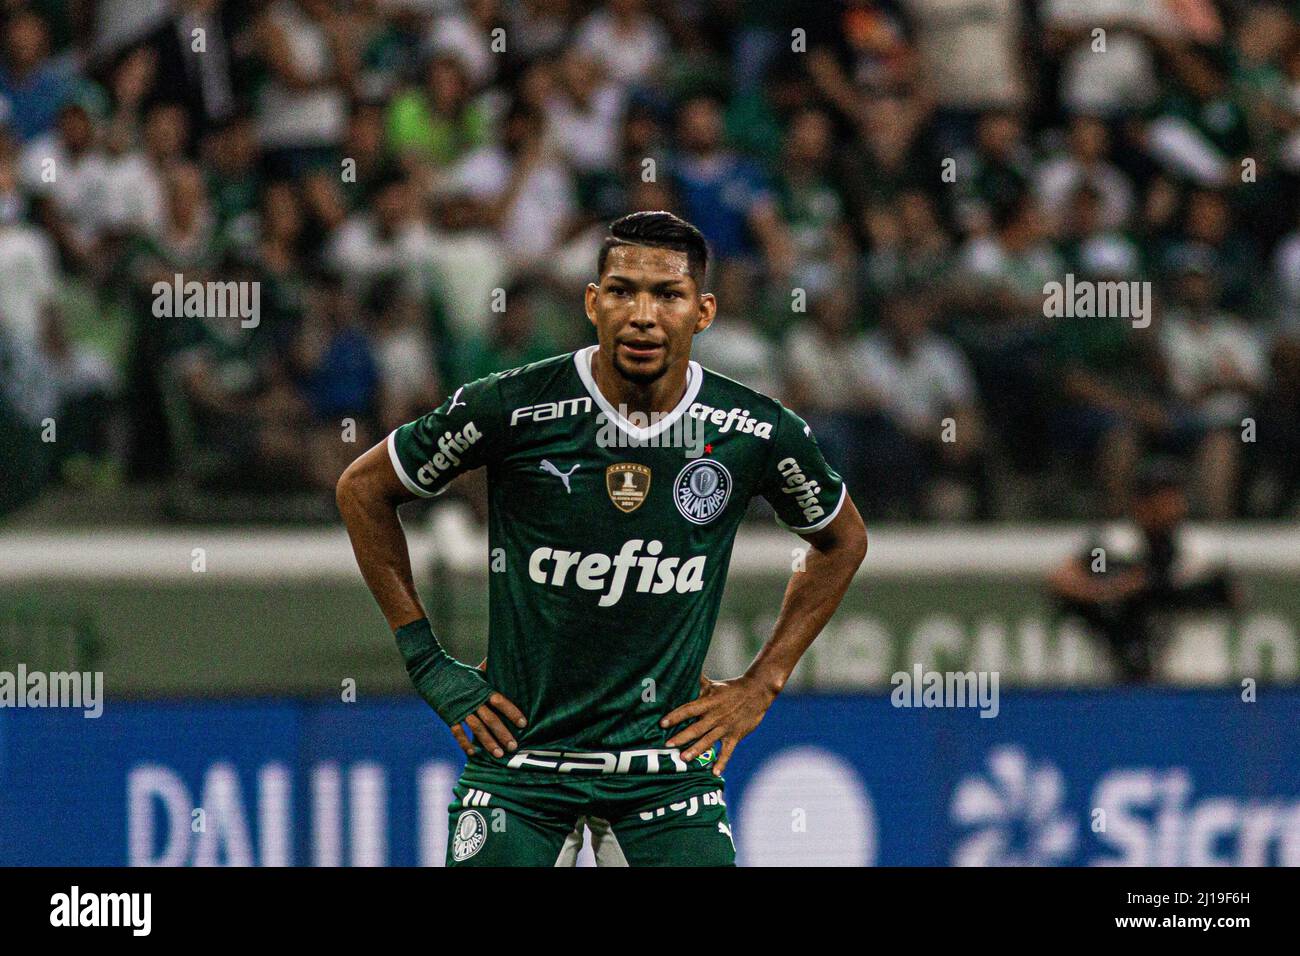 FootballShirtCulture.com on X: Palmeiras, the São Paulo-based